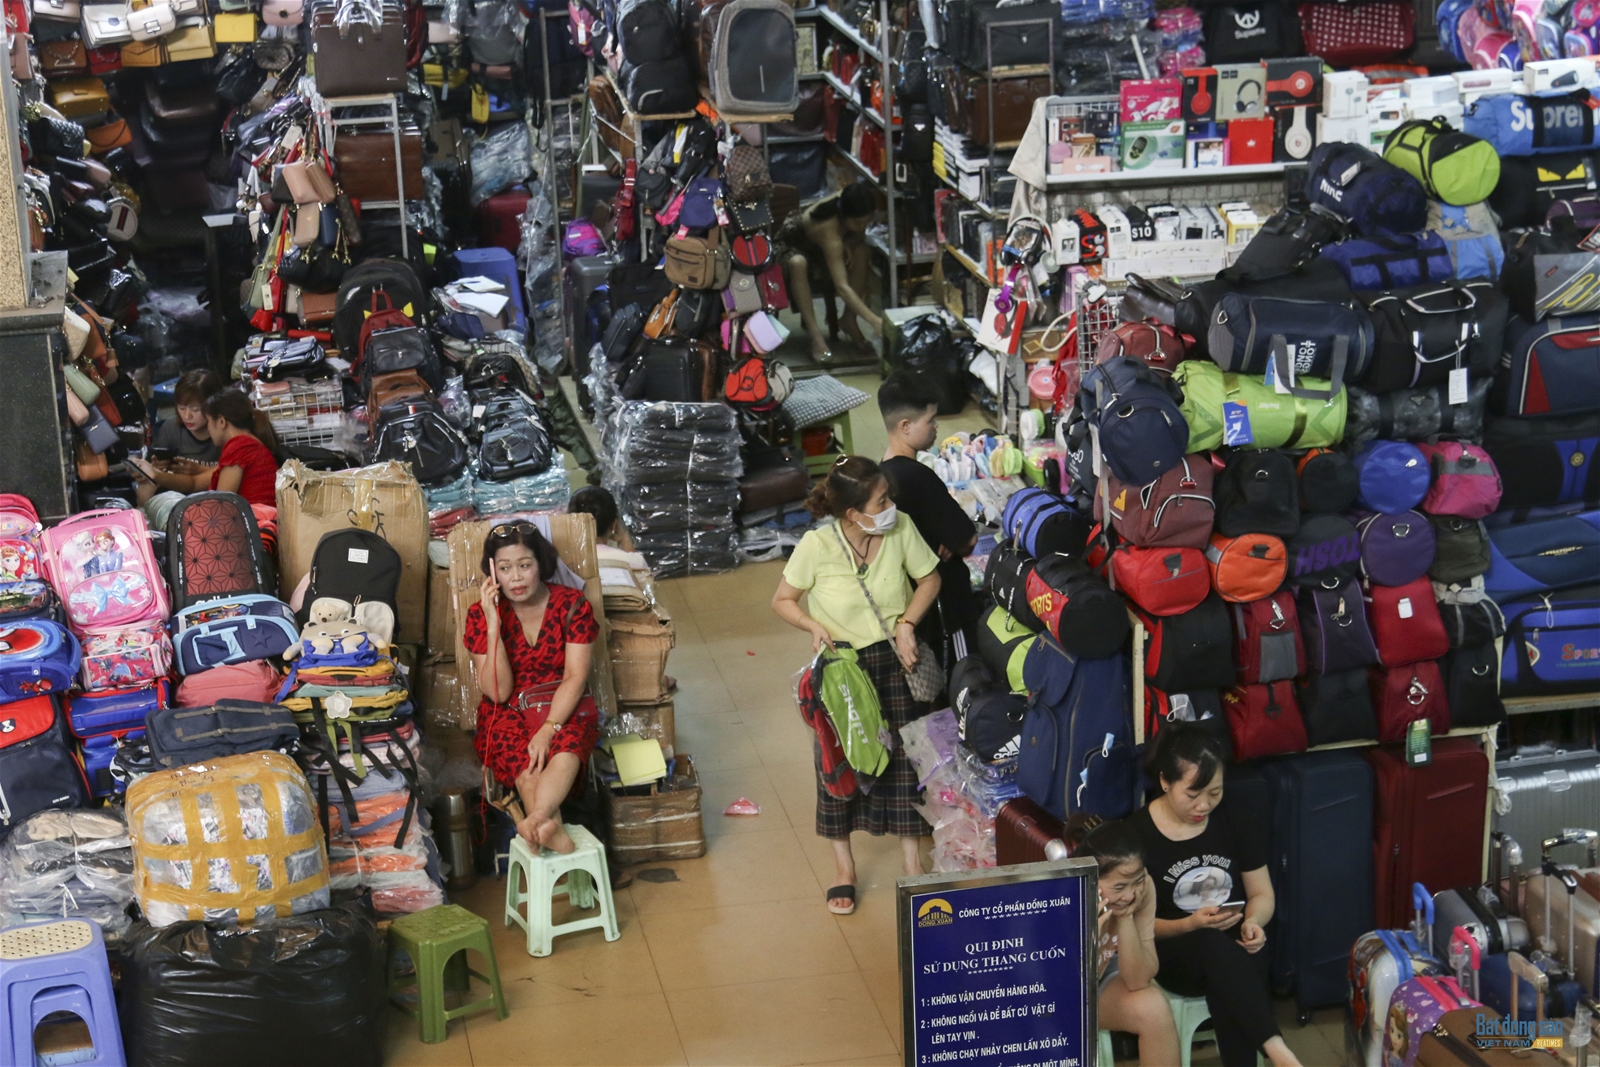 Chợ Đồng Xuân đìu hiu, vắng khách trong mùa dịch Covid19